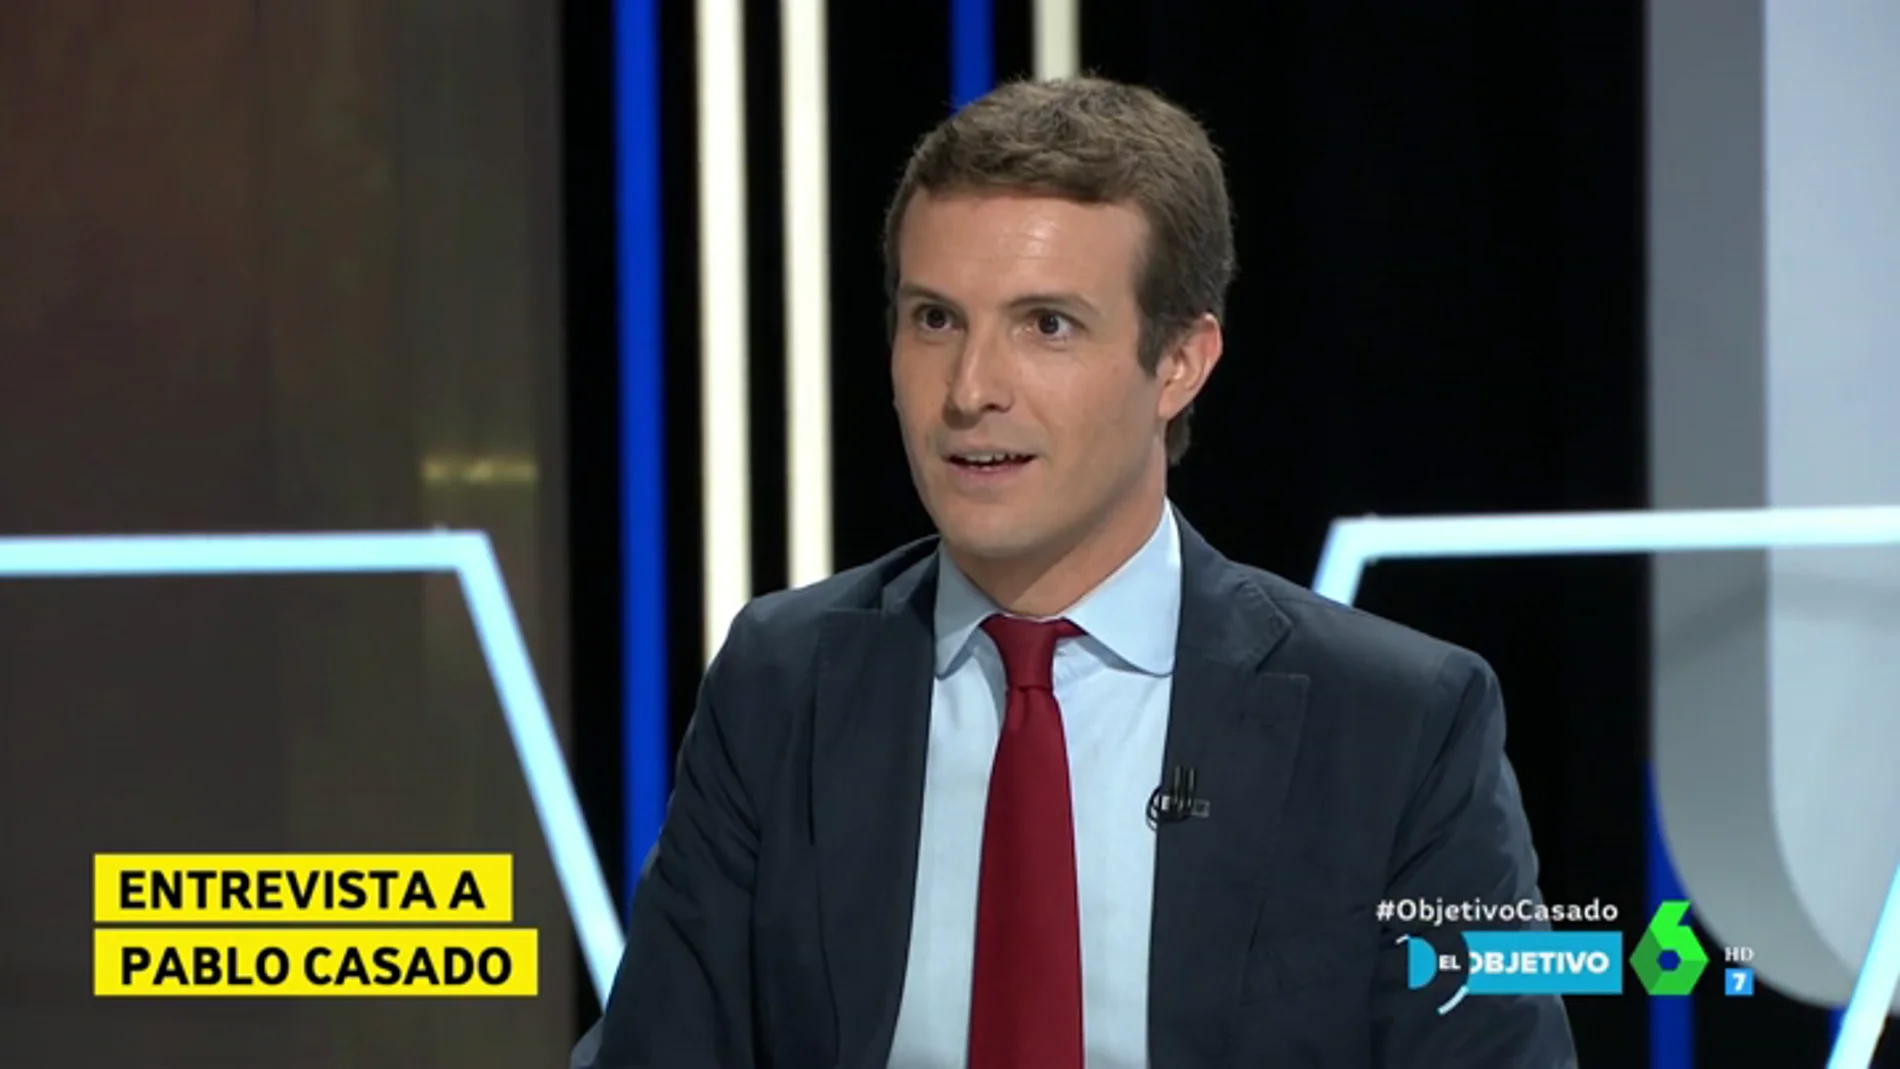 Pablo Casado respalda las declaraciones de Tejerina sobre los niños andaluces: "No lo dice ella, lo dice PISA"